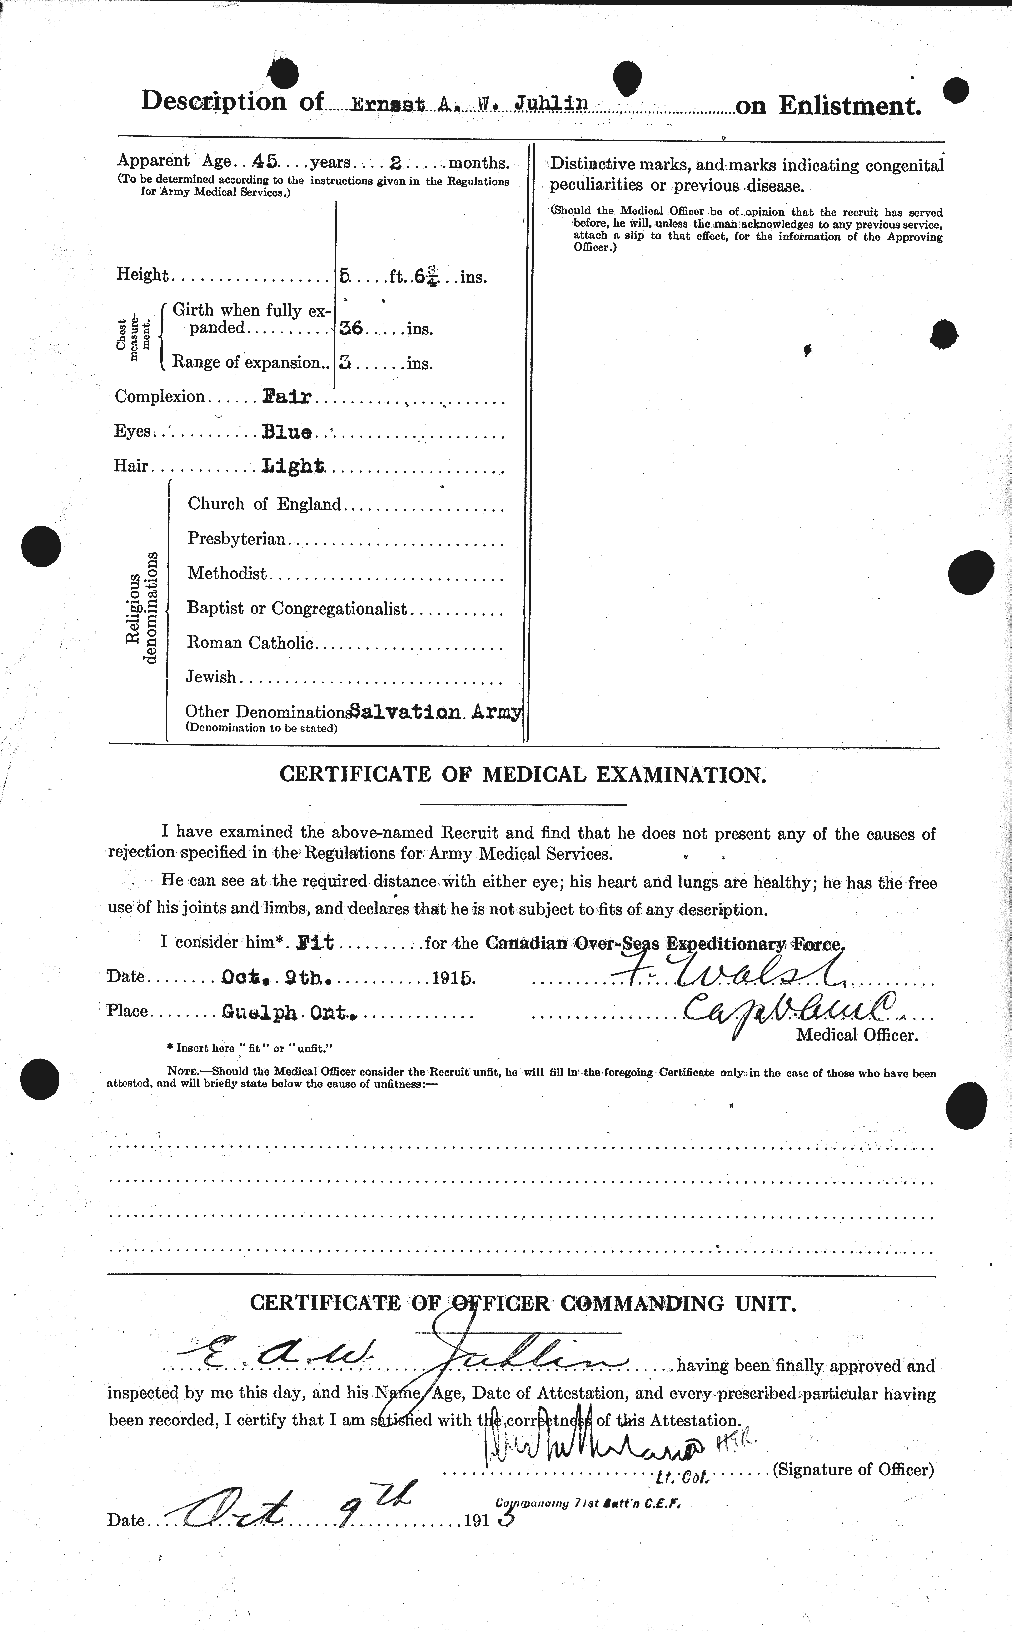 Dossiers du Personnel de la Première Guerre mondiale - CEC 425098b